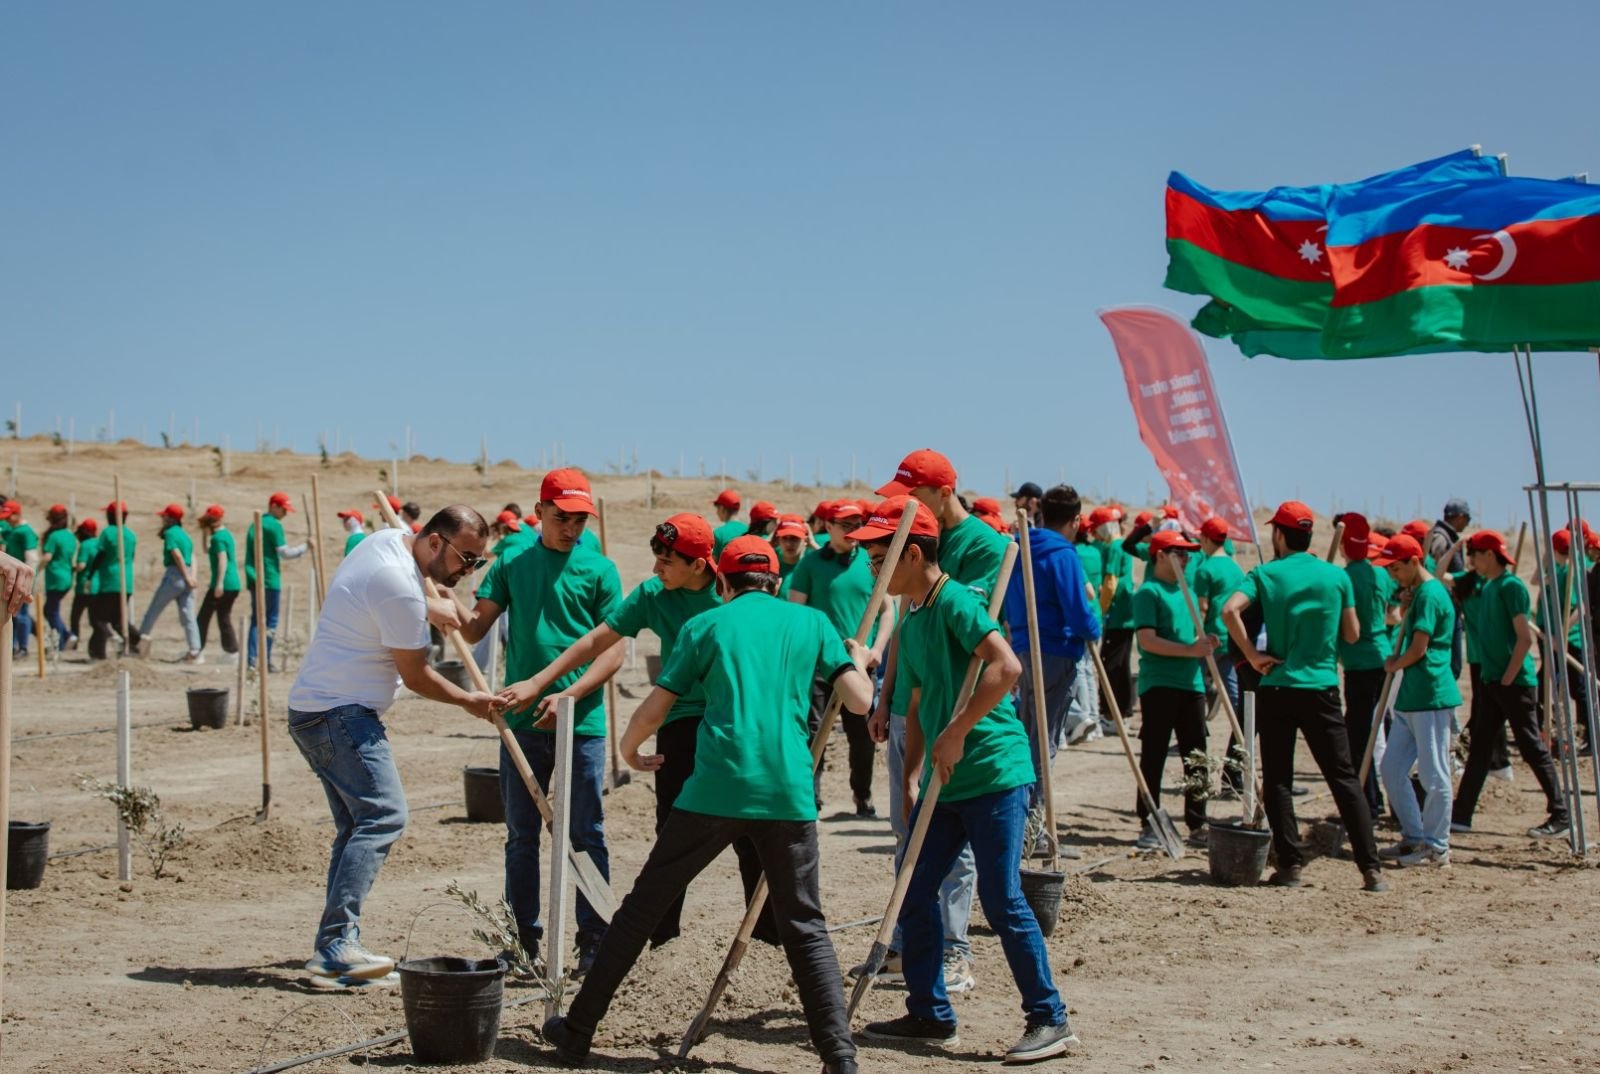 McDonald’s Azərbaycan провел акцию по посадке деревьев совместно с учениками школы-интерната (ФОТО)